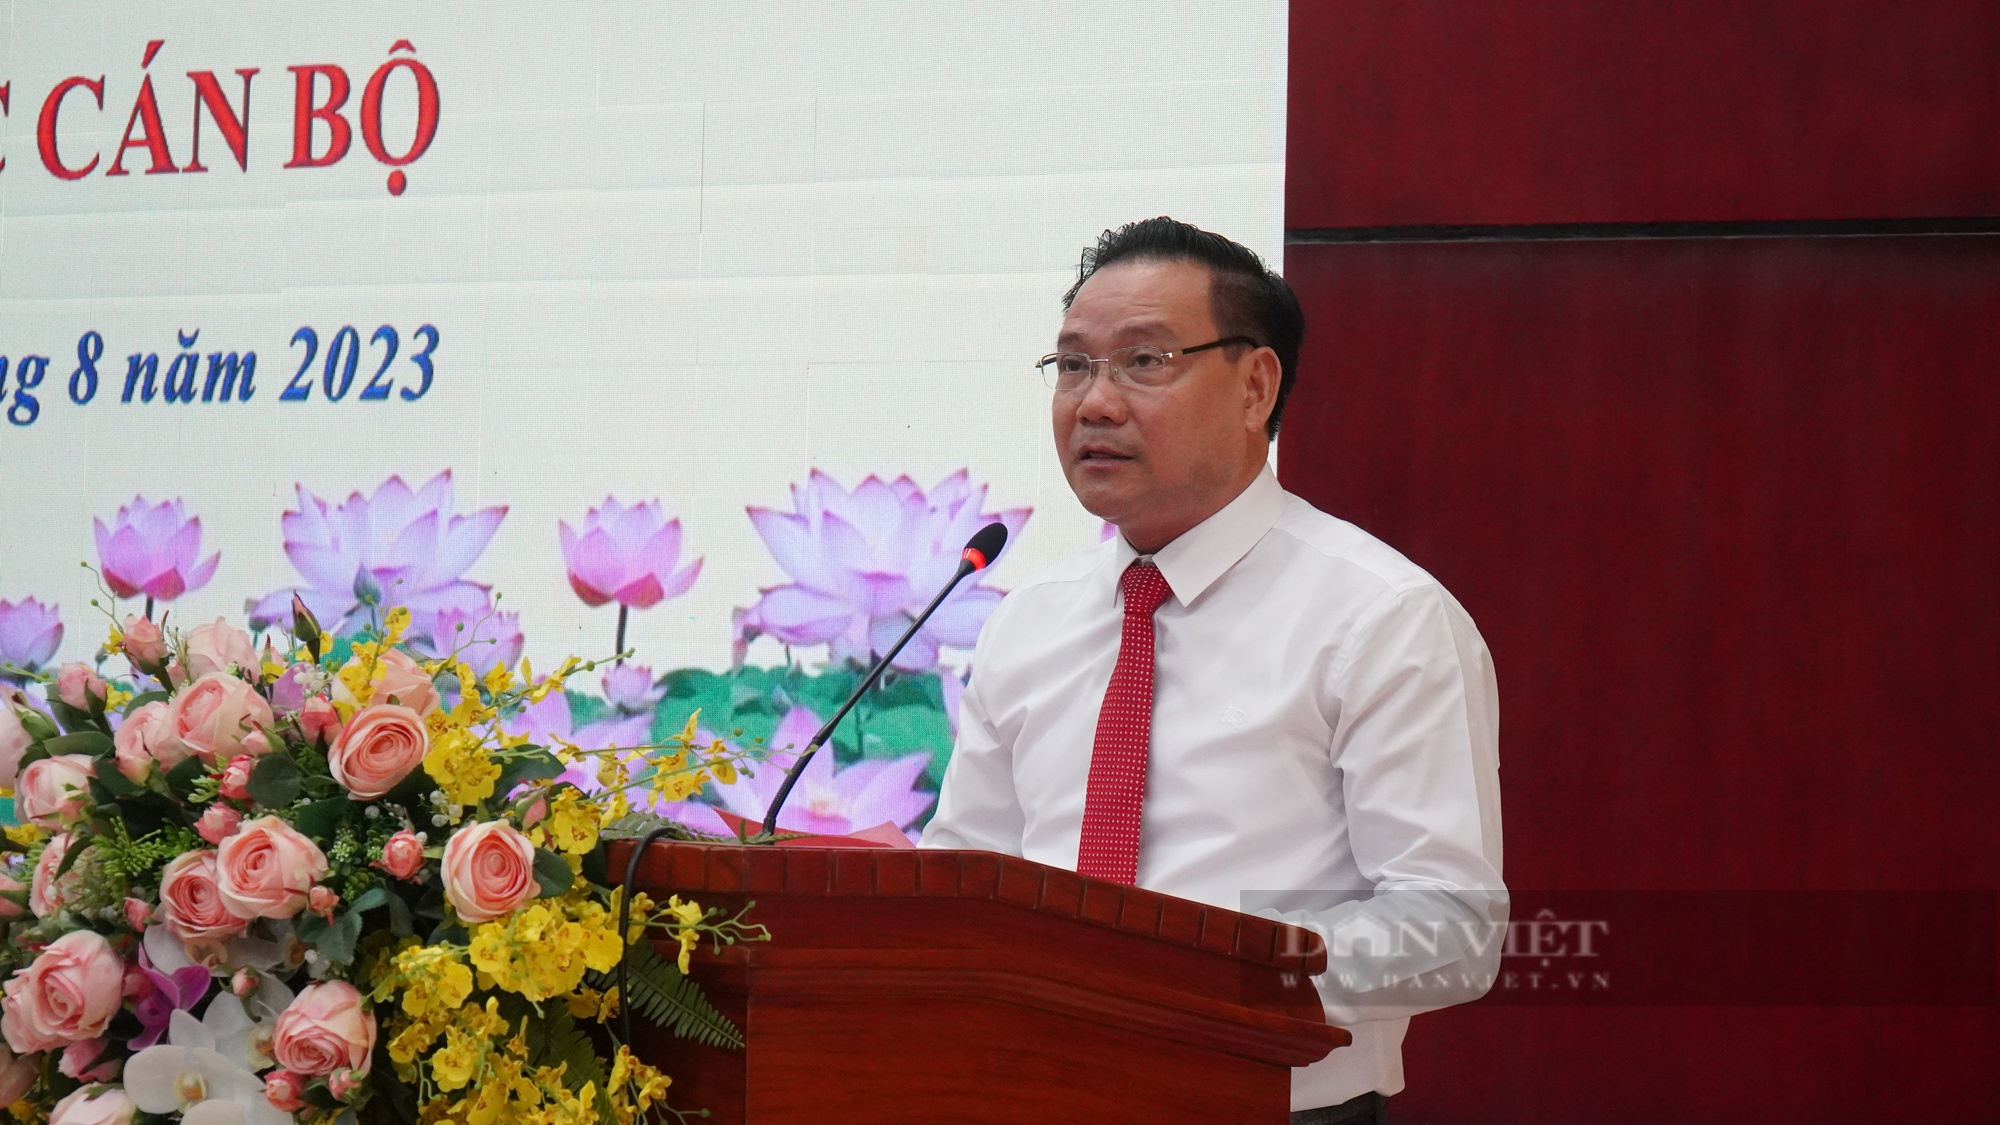 Chủ tịch Hội Nông dân tỉnh Bắc Ninh được bổ nhiệm giữ chức Giám đốc Sở Tư pháp tỉnh Bắc Ninh - Ảnh 4.